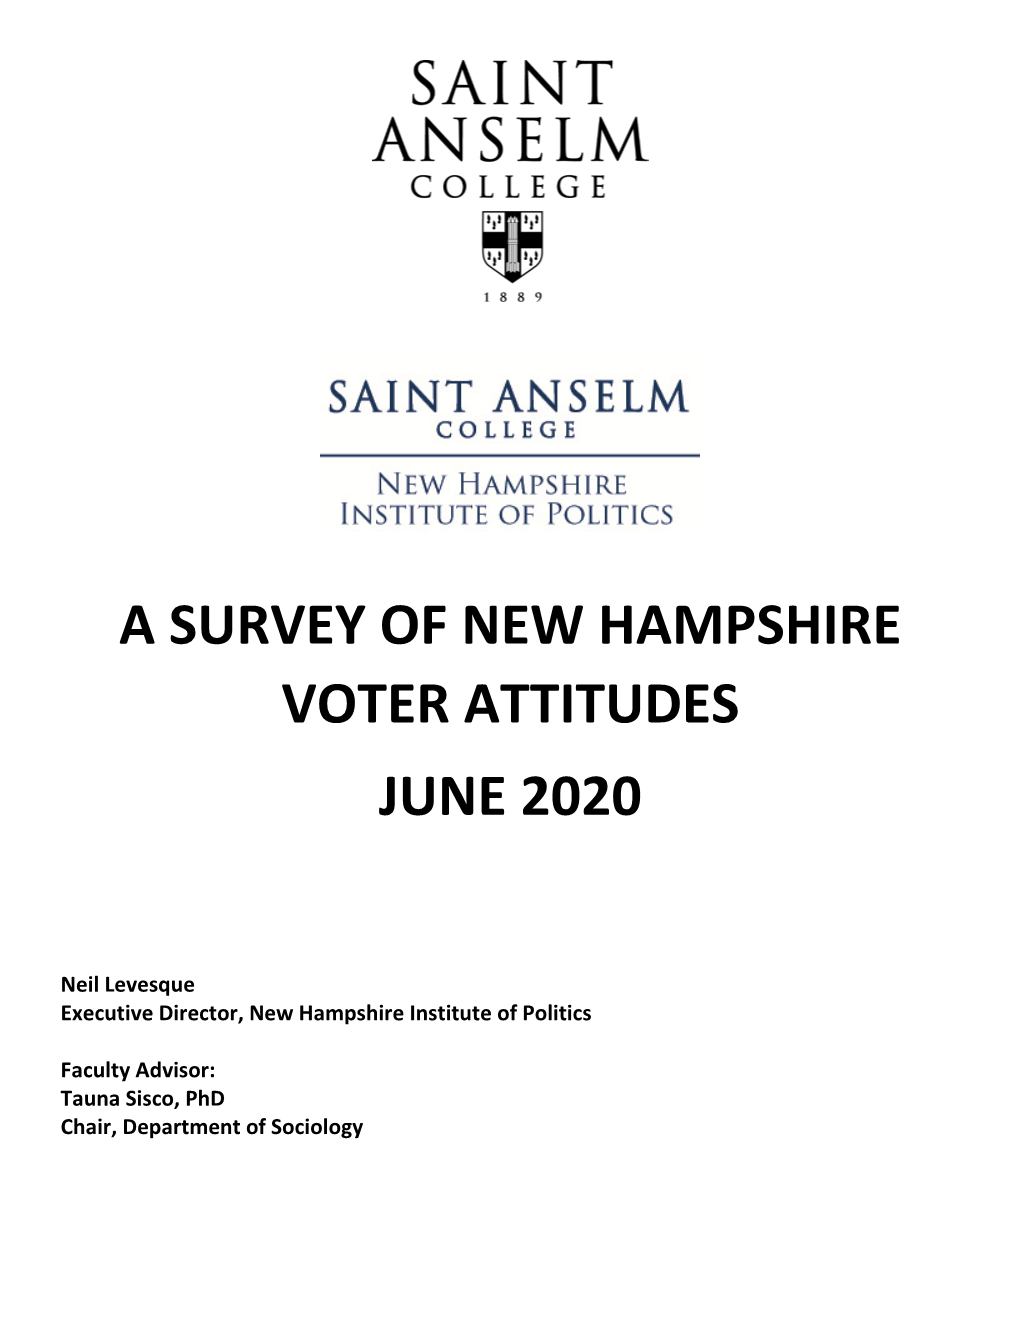 A Survey of New Hampshire Voter Attitudes June 2020